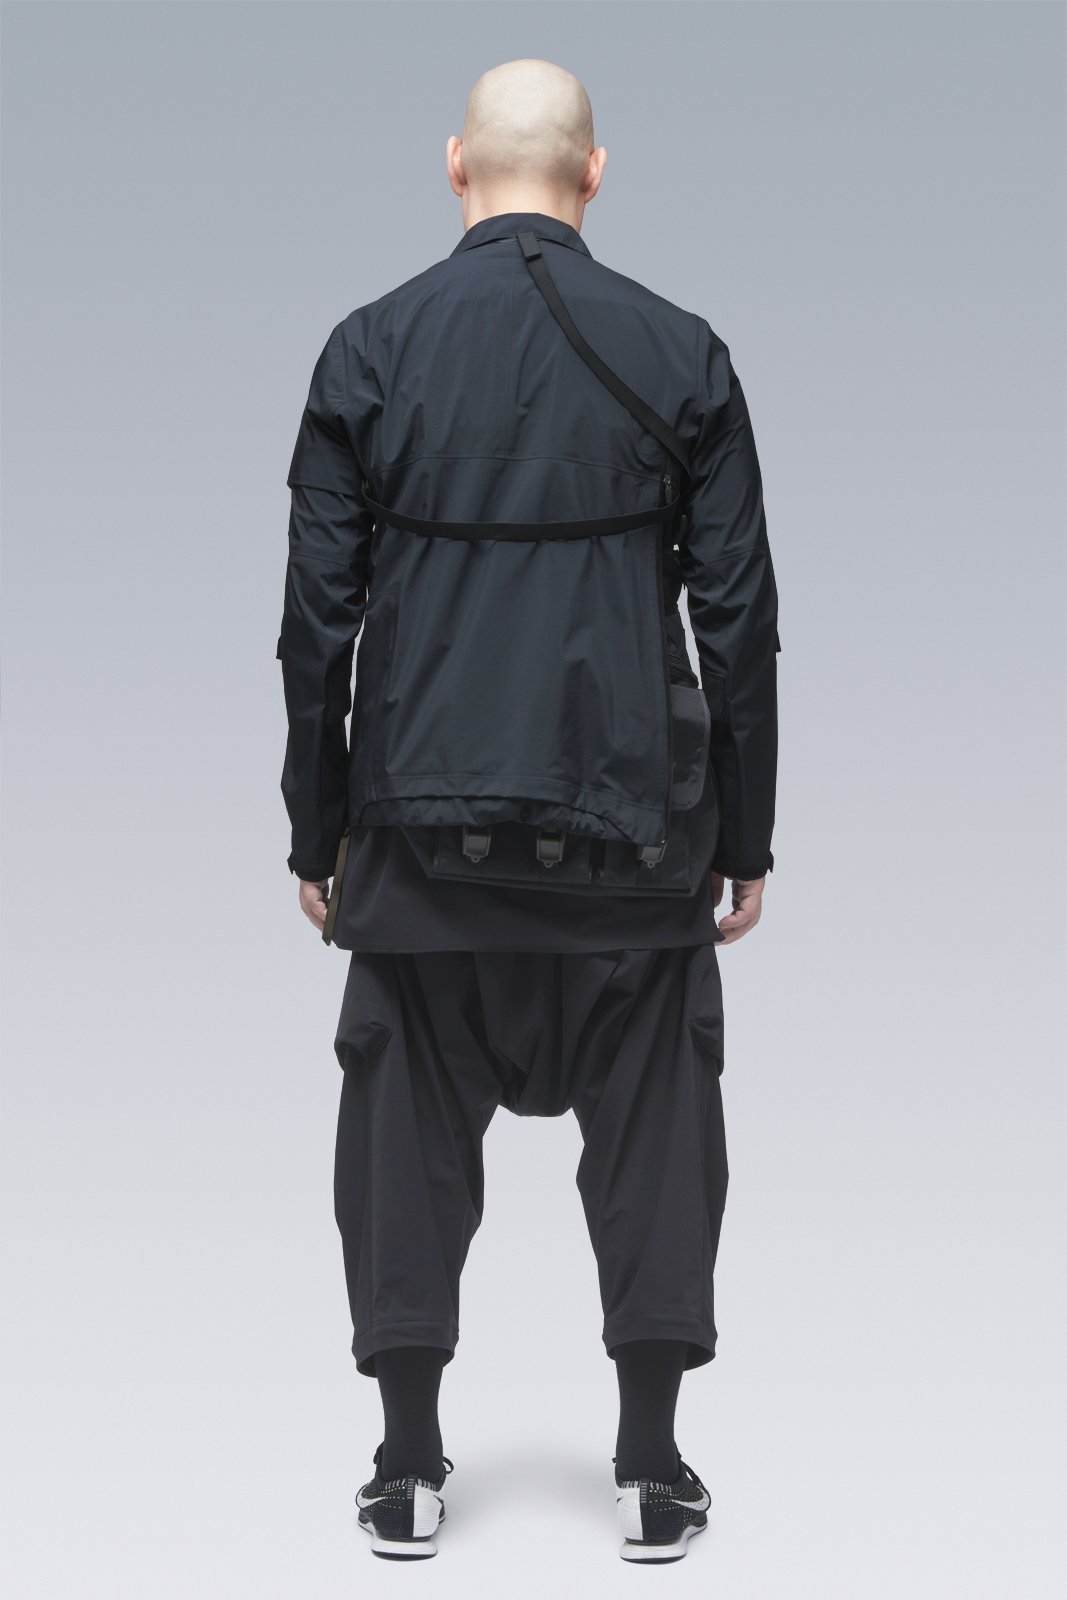 ACRONYM - P30A-DS Pants Black - Clothing - Black - Image 4